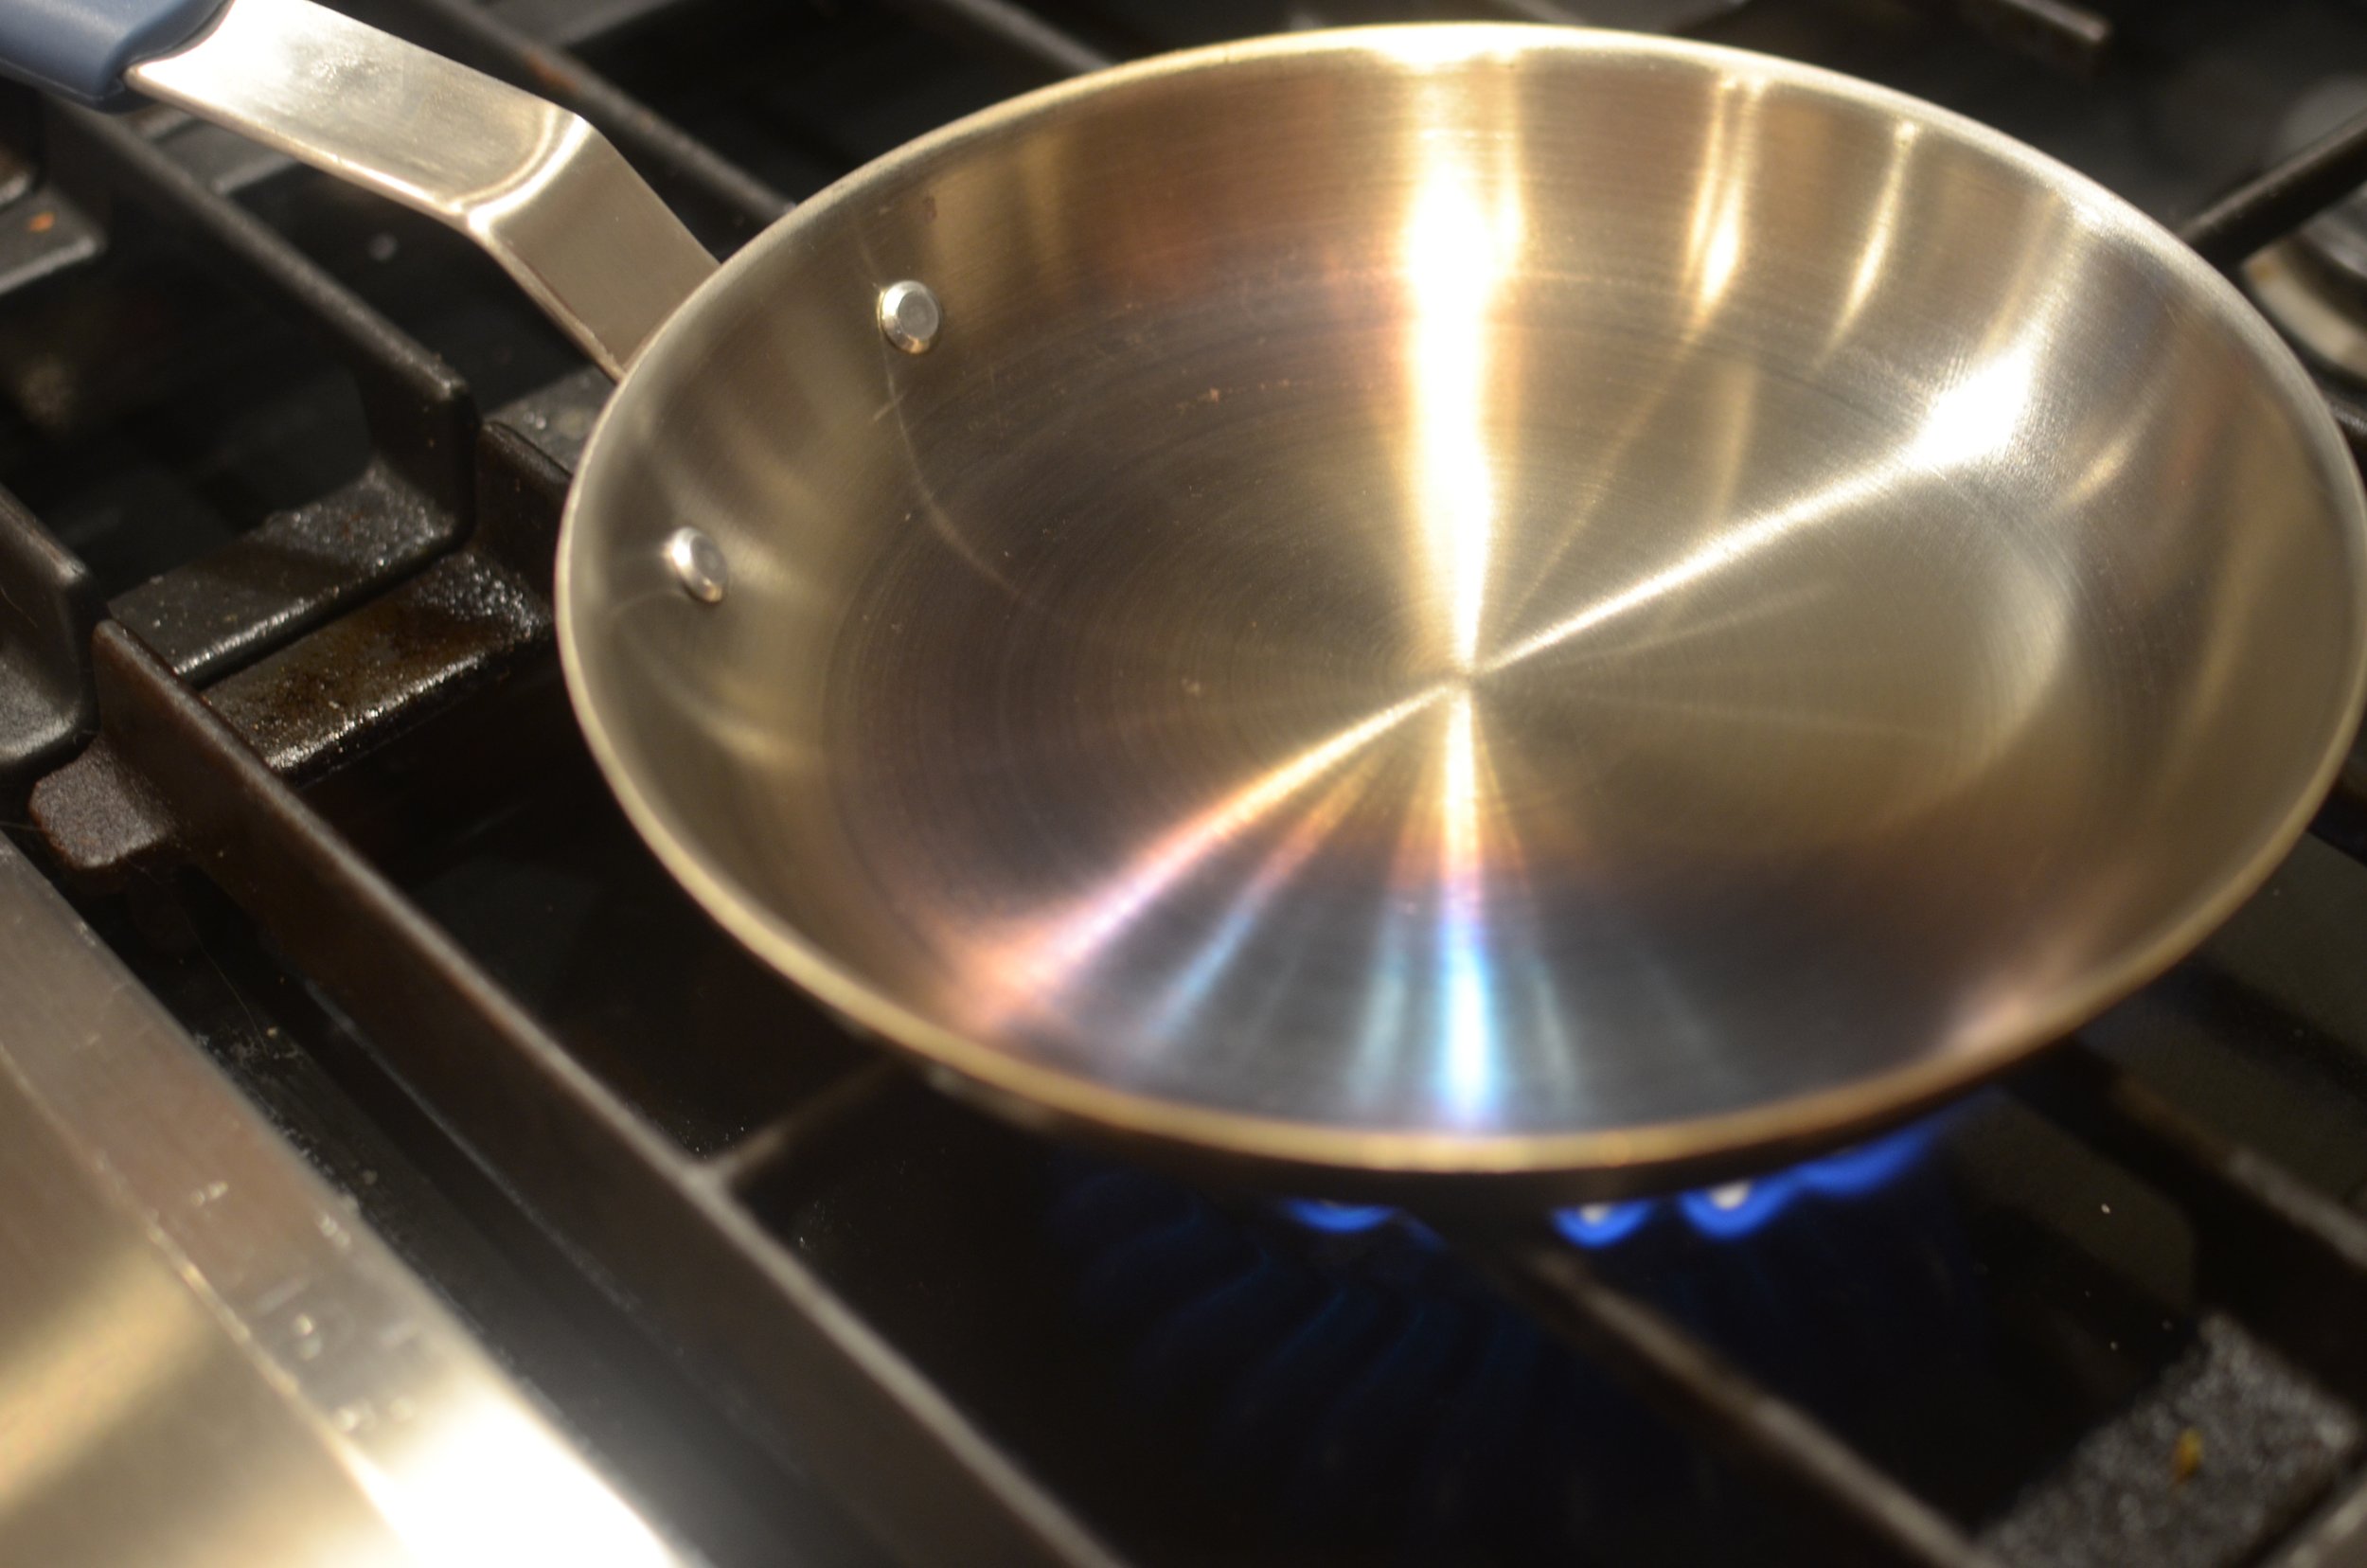 Seasoning Wax for Comal Carbon Steel Pan – Masienda